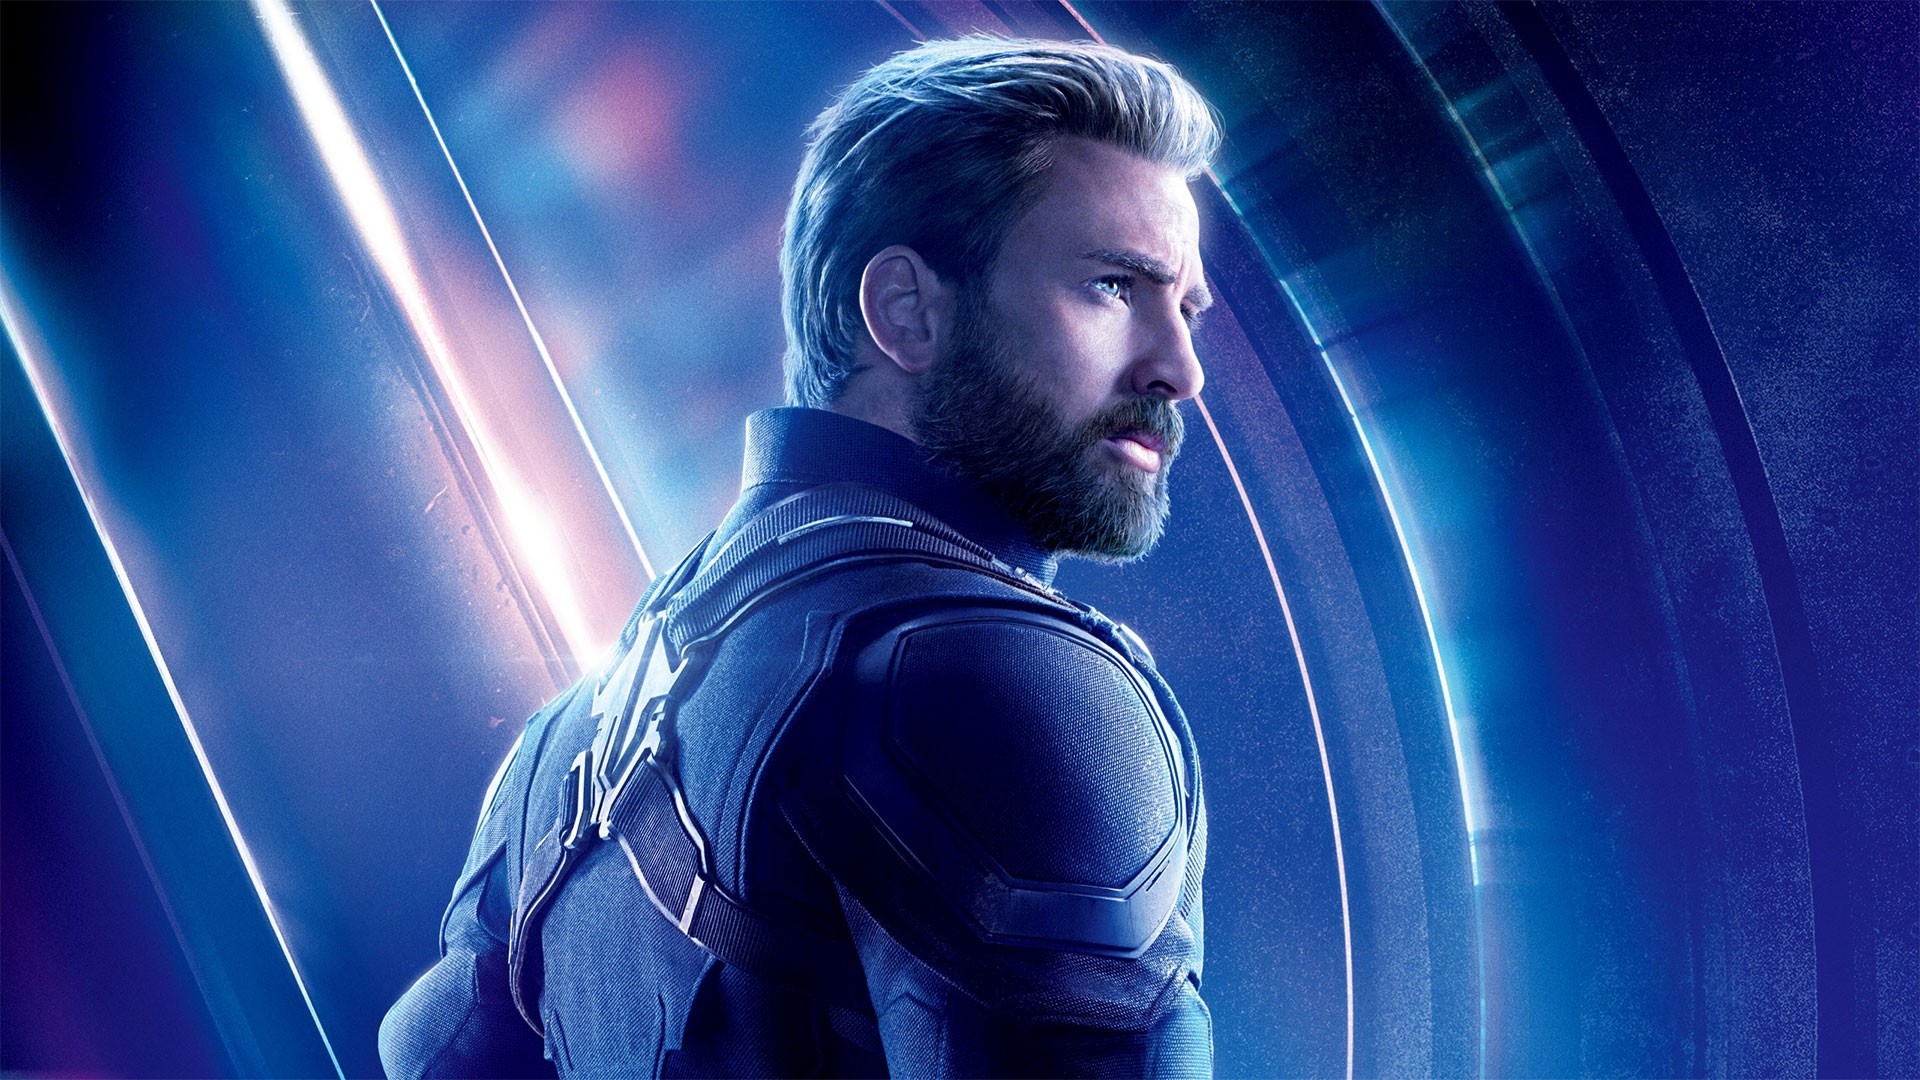 Chris Evans, Captain America, Avengers Endgame, Movie poster wallpaper, 1920x1080 Full HD Desktop